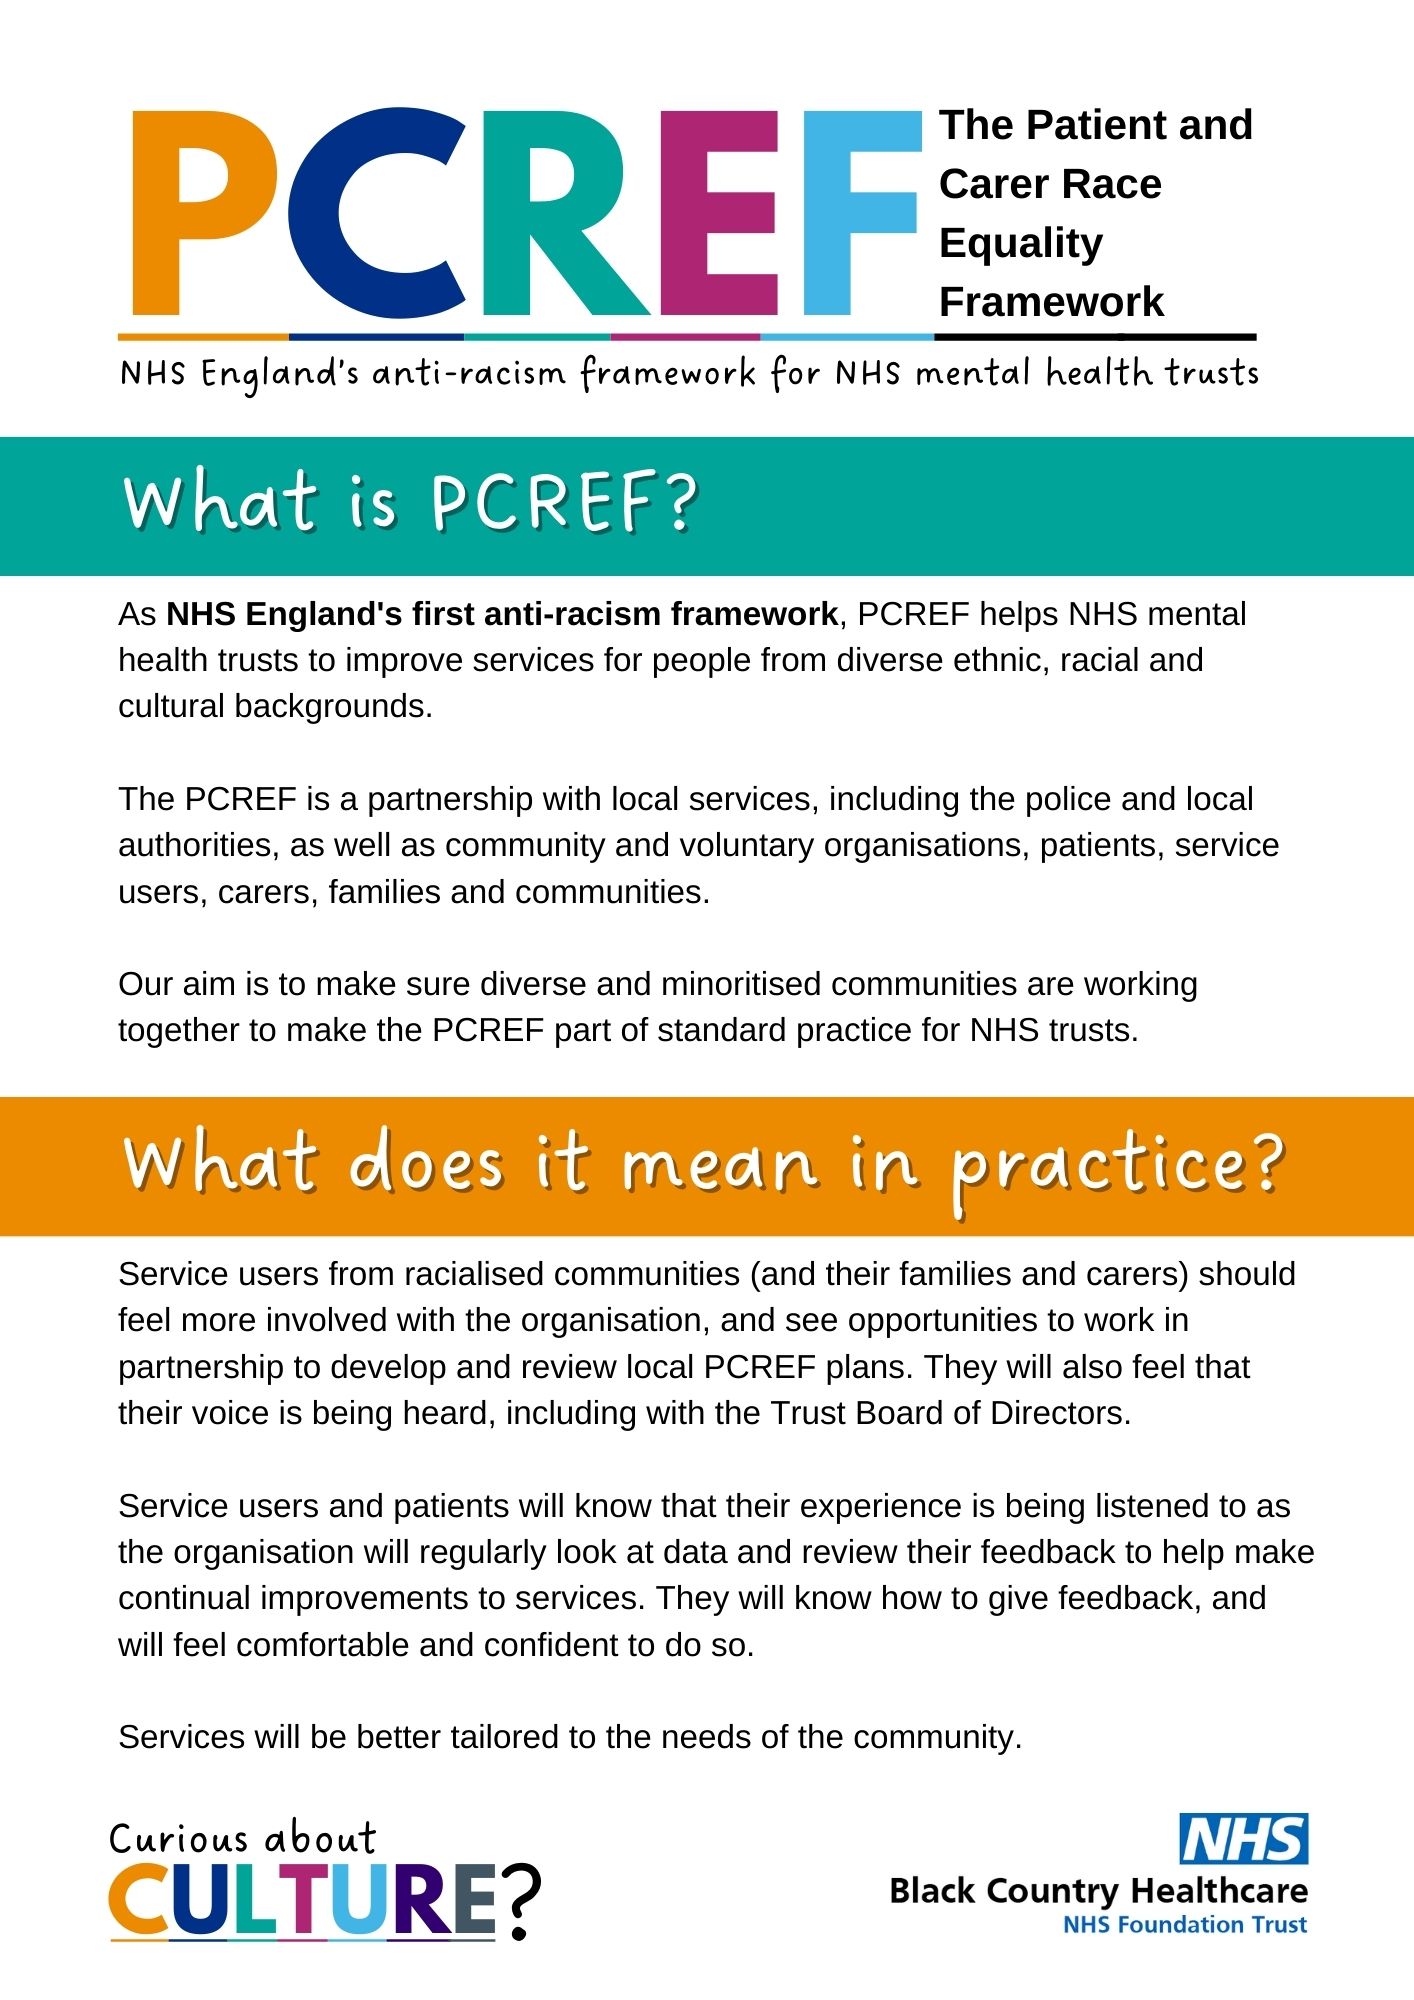 Image of PCREF leaflet